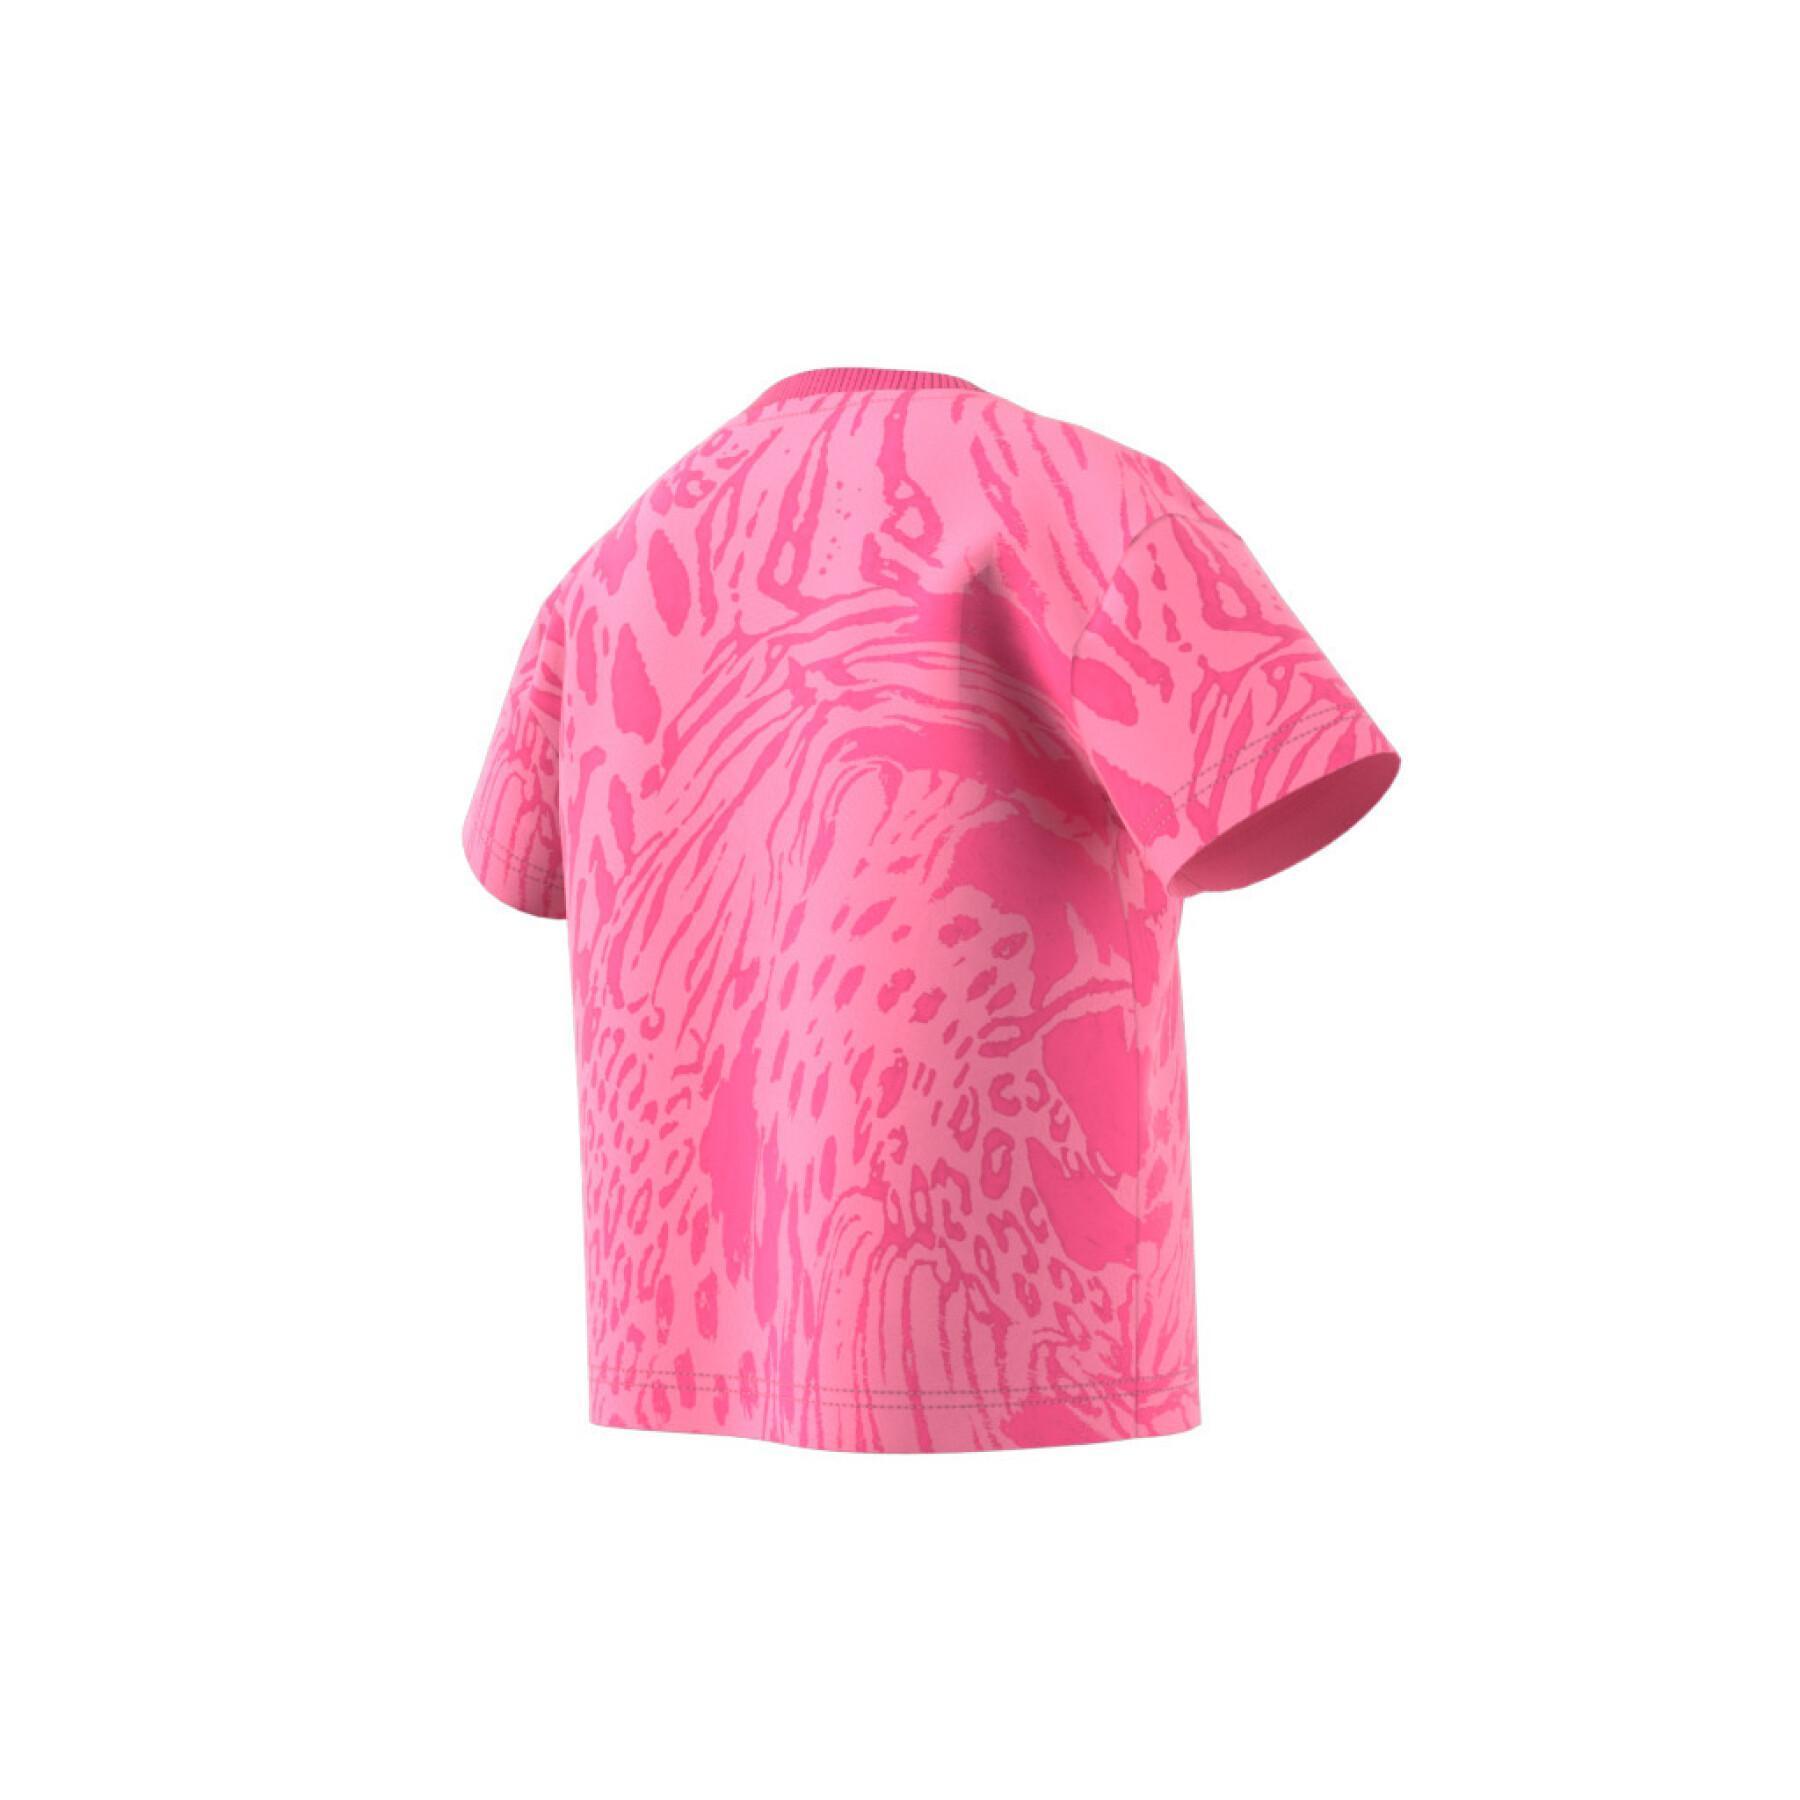 Regularny bawełniany t-shirt z hybrydowym nadrukiem zwierzęcym dla dziewczynek adidas Future Icons